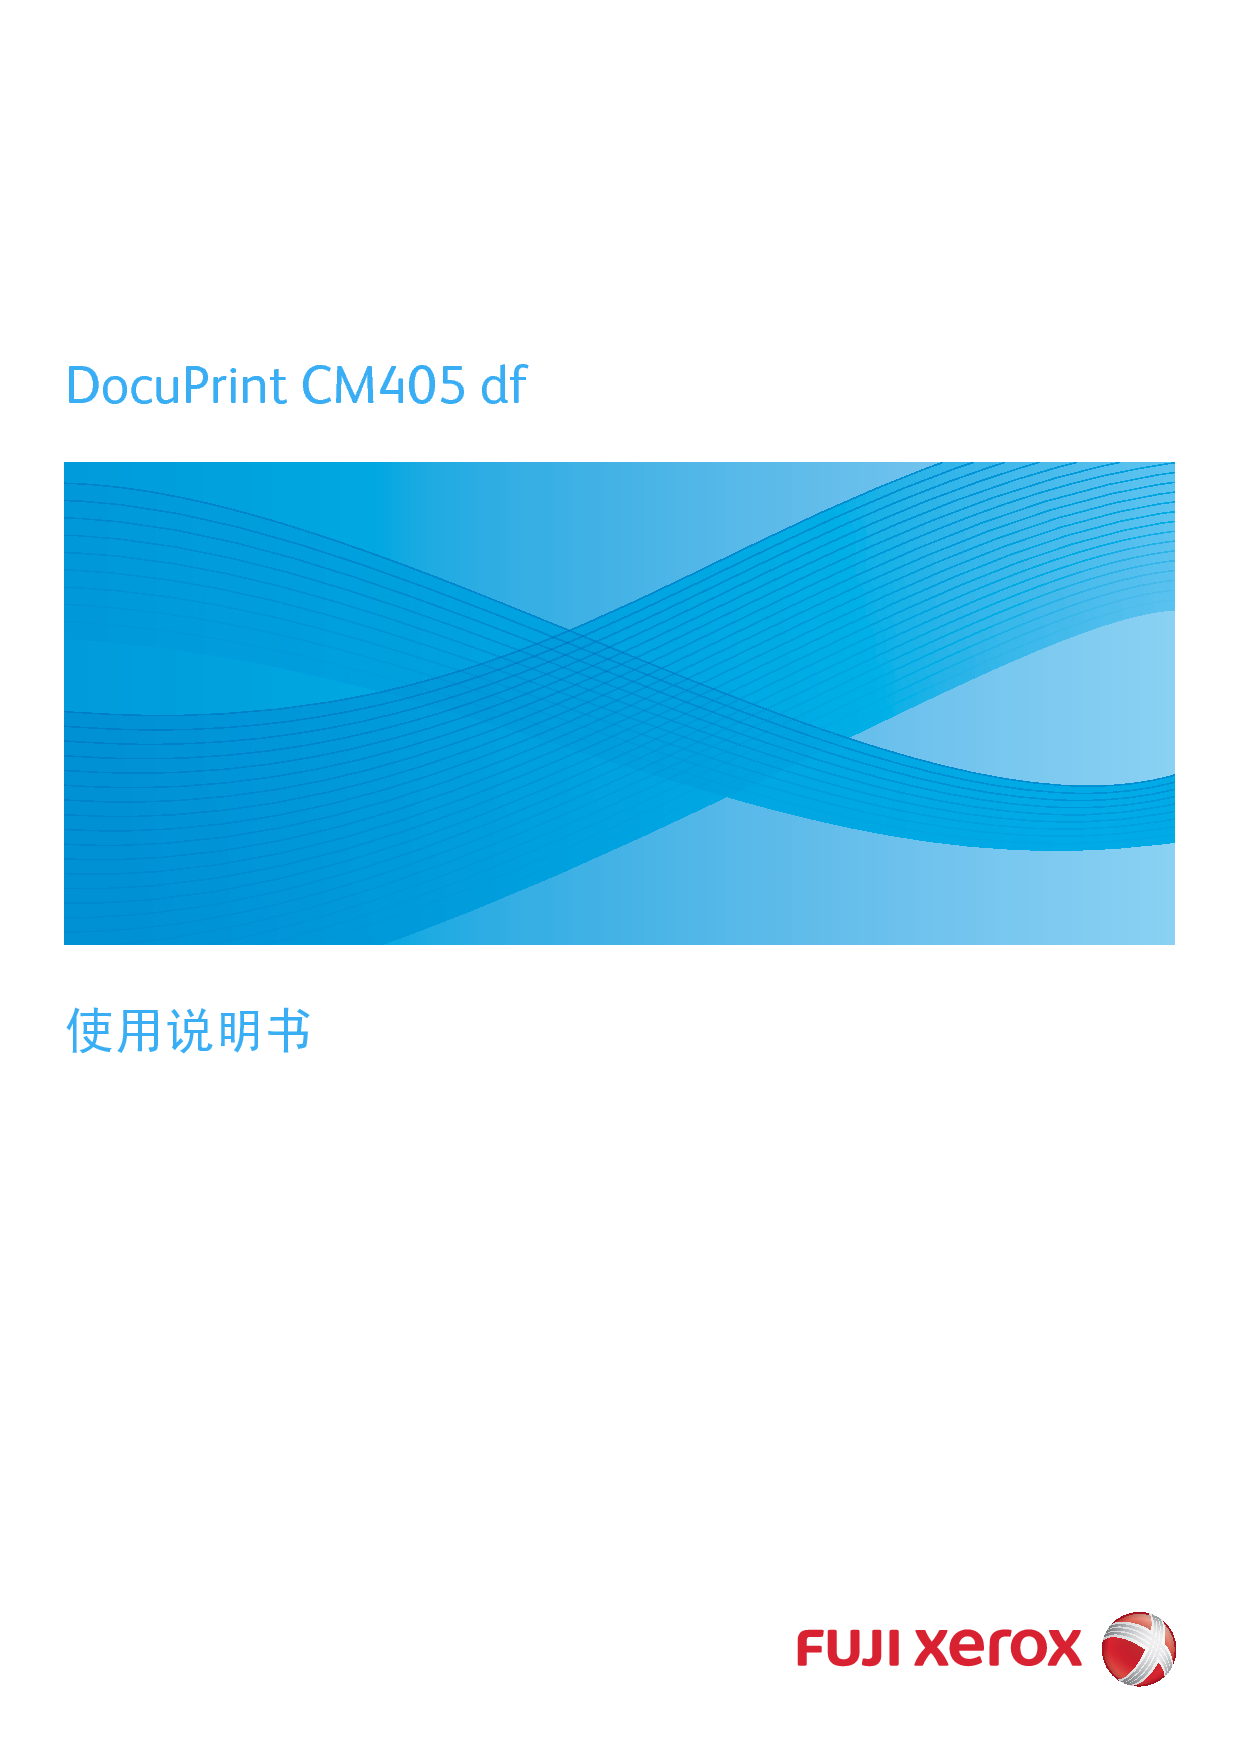 富士施乐 Fuji Xerox DocuPrint CM405 df 使用说明书 封面